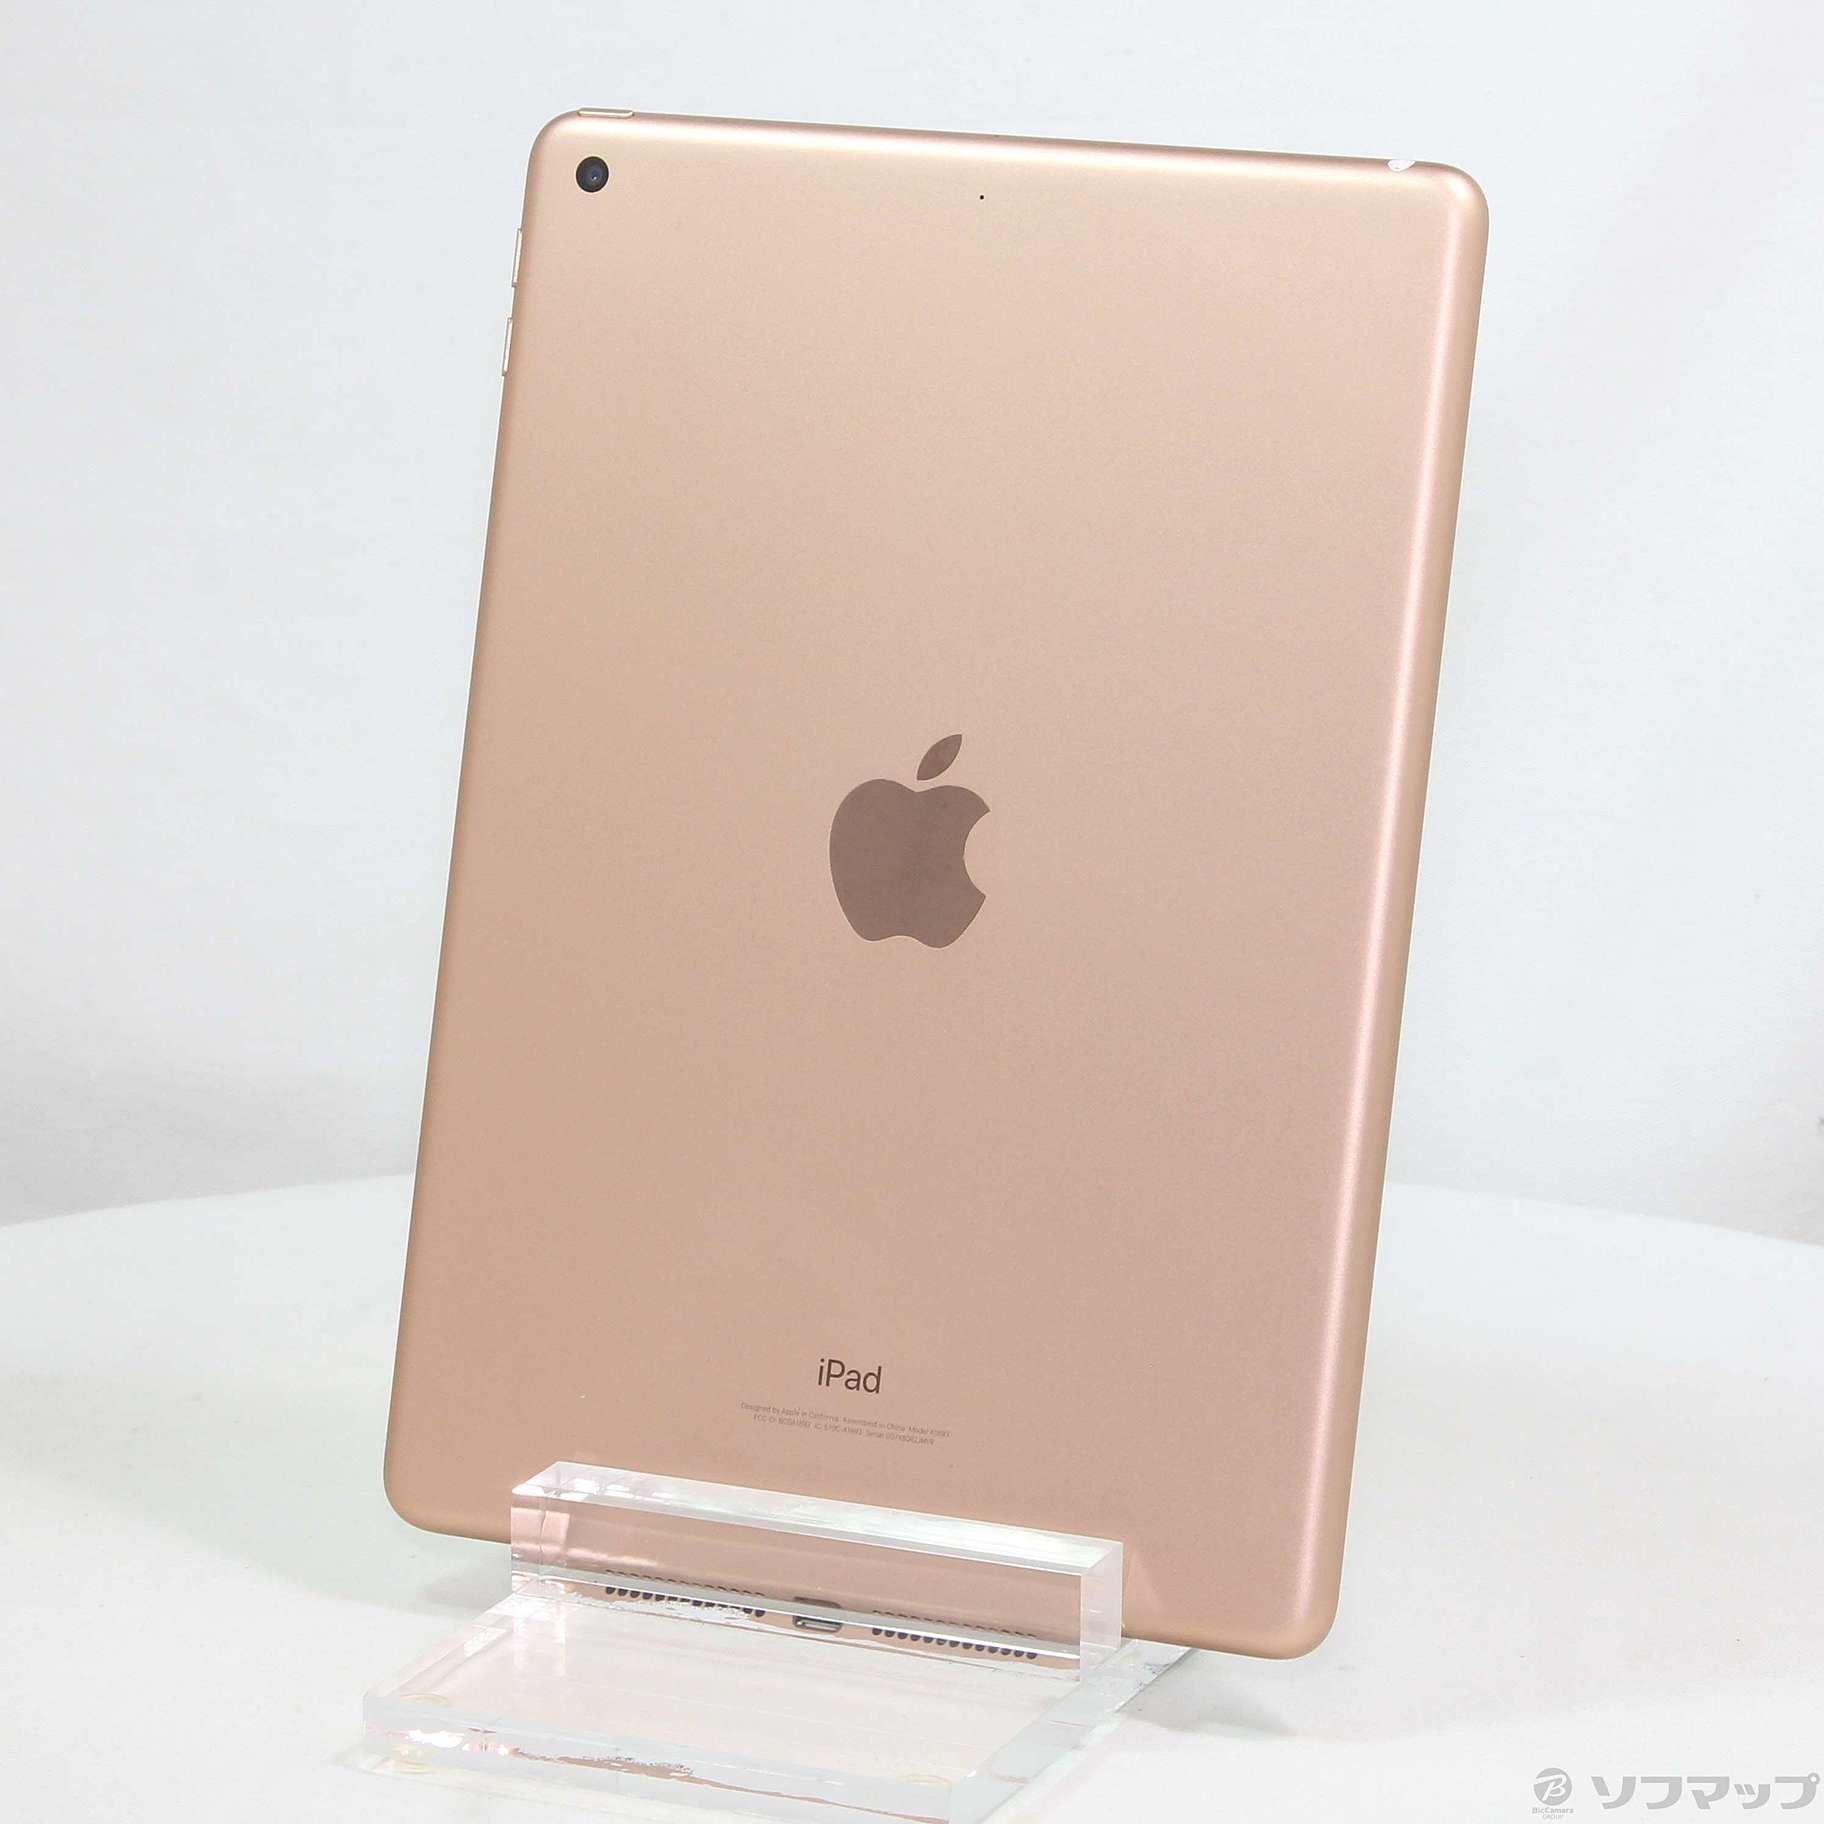 MRJN2JAOSバージョン【値下げ】第6世代 iPad 32GB ローズゴールド (2018年モデル)